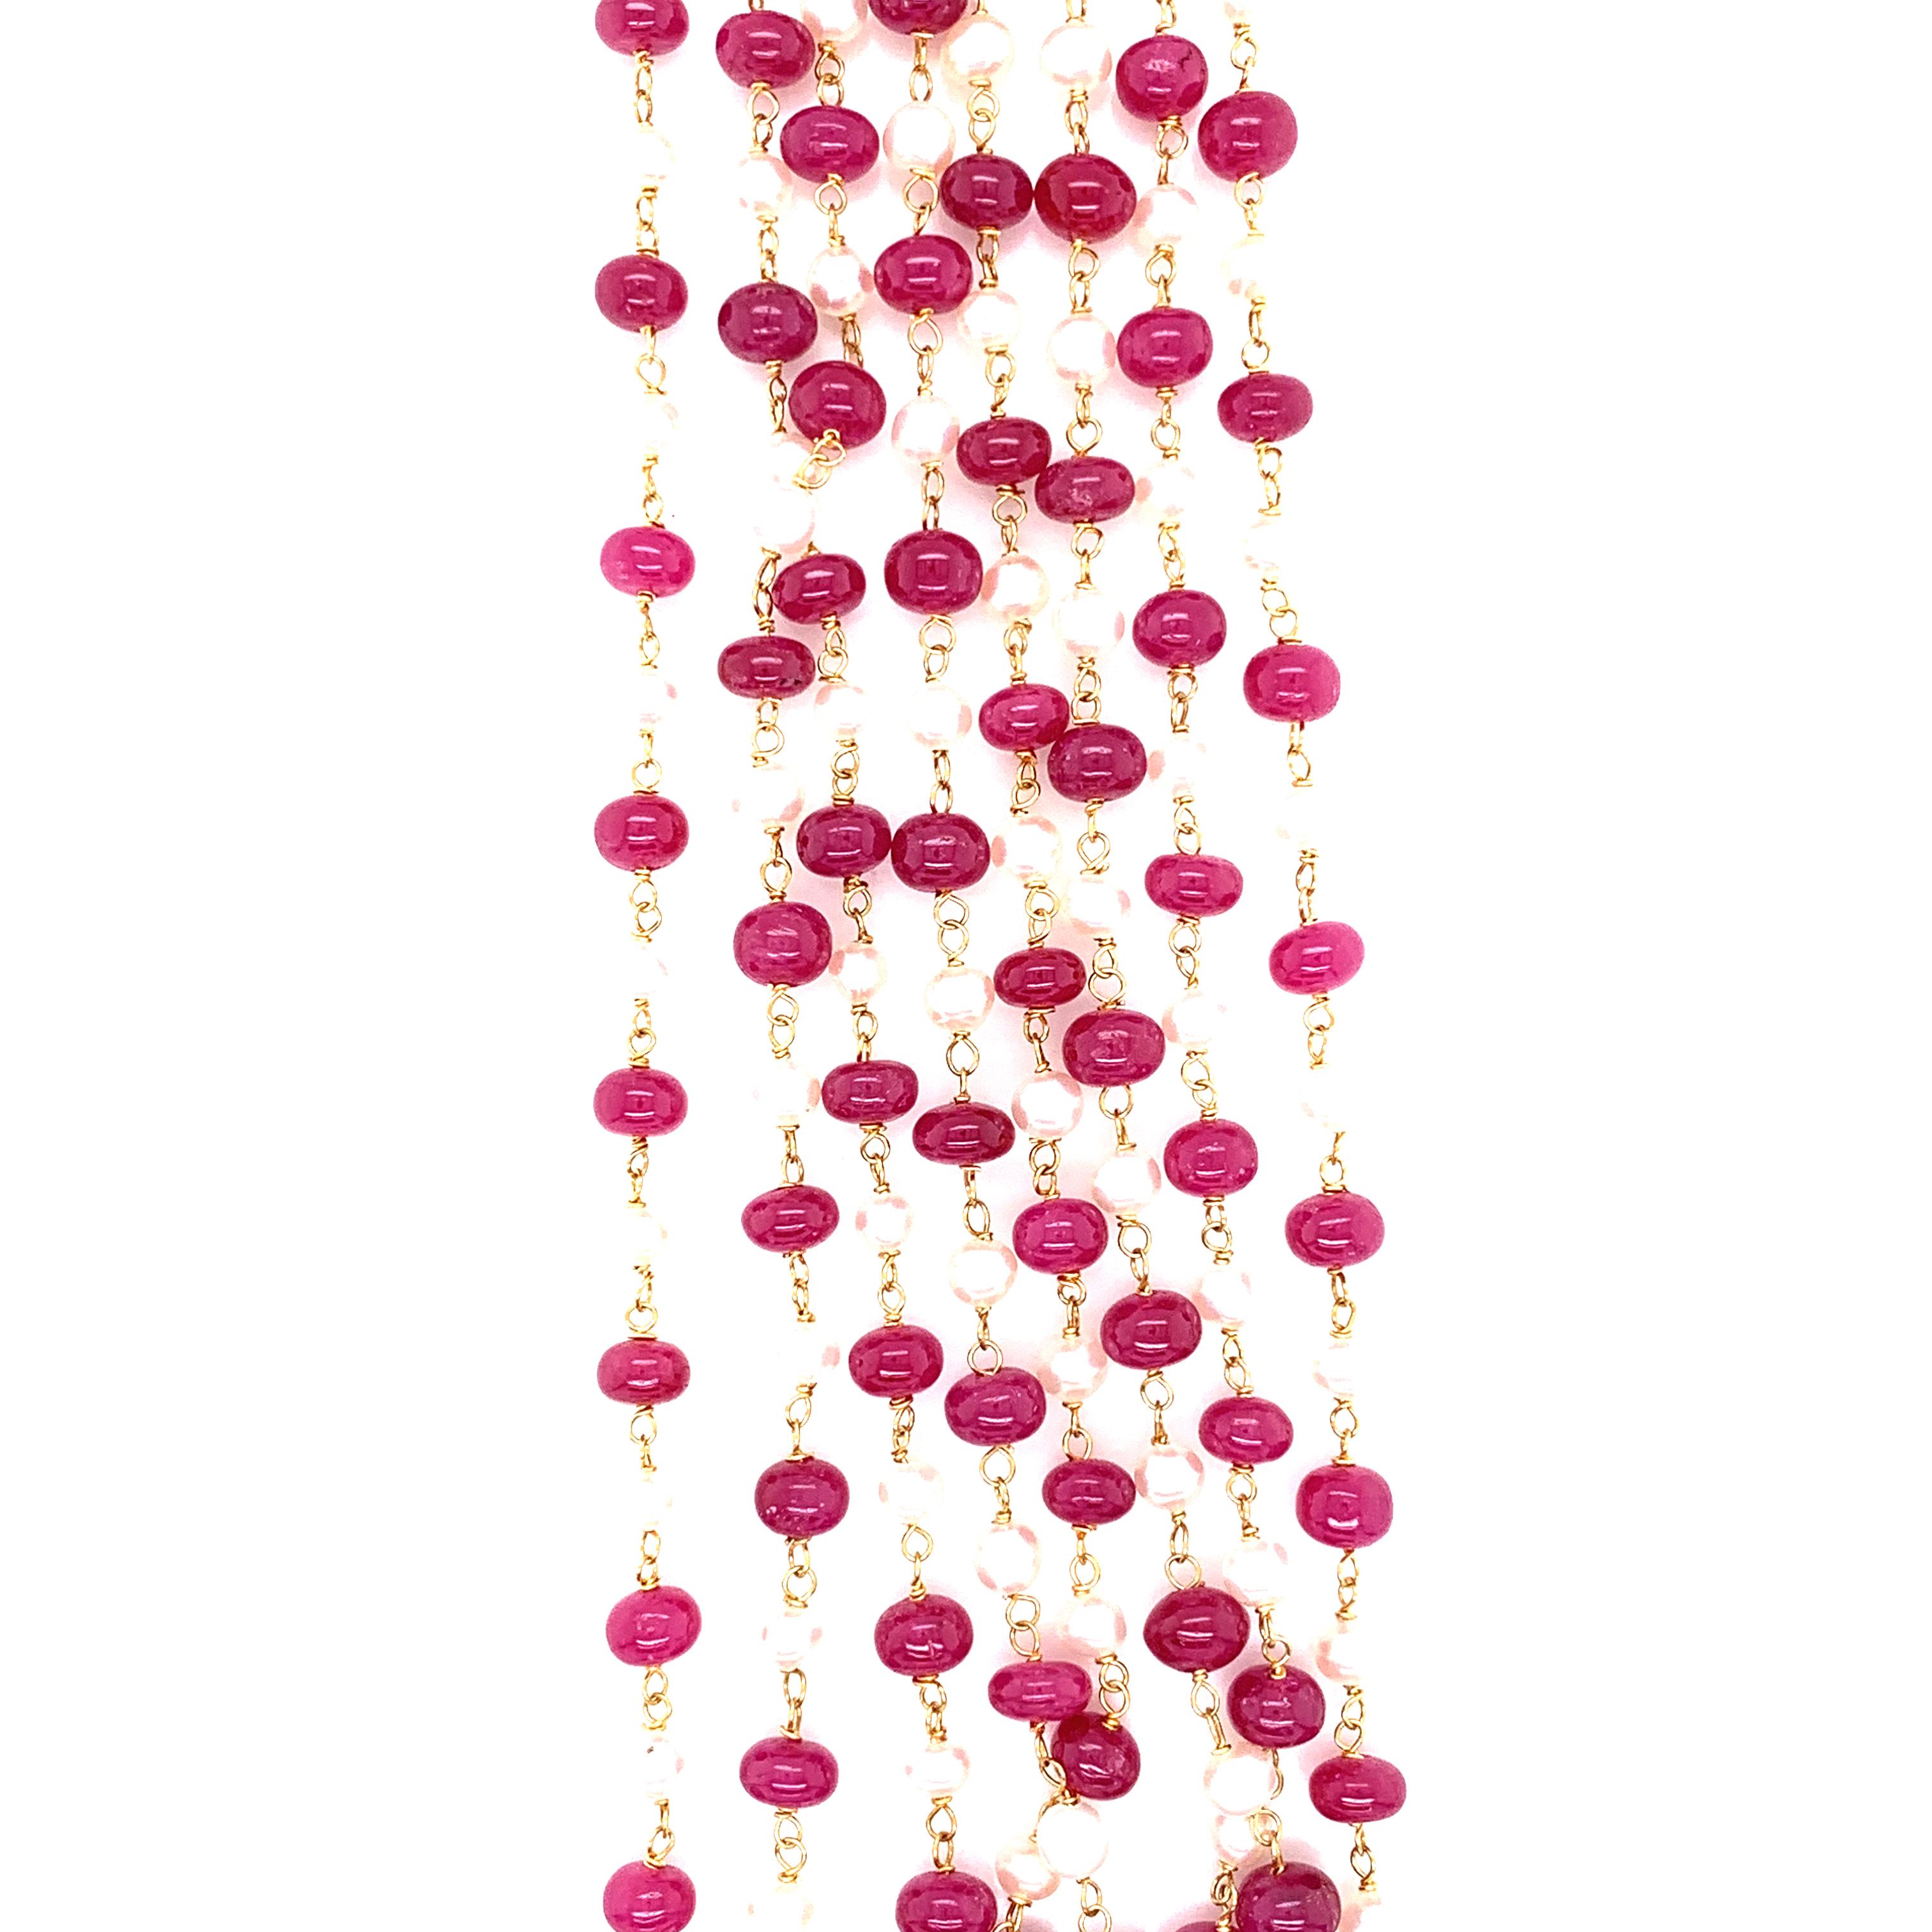 Rubinperlen und Südsee-Zuchtperlen 22K Gold Halskette: 

Dieses wunderschöne Collier besteht aus feuerroten Rubinperlen mit einem Gewicht von 121 Karat und weißen Südsee-Zuchtperlen mit einem Gewicht von 34,36 Karat, die zwischen den Rubinen